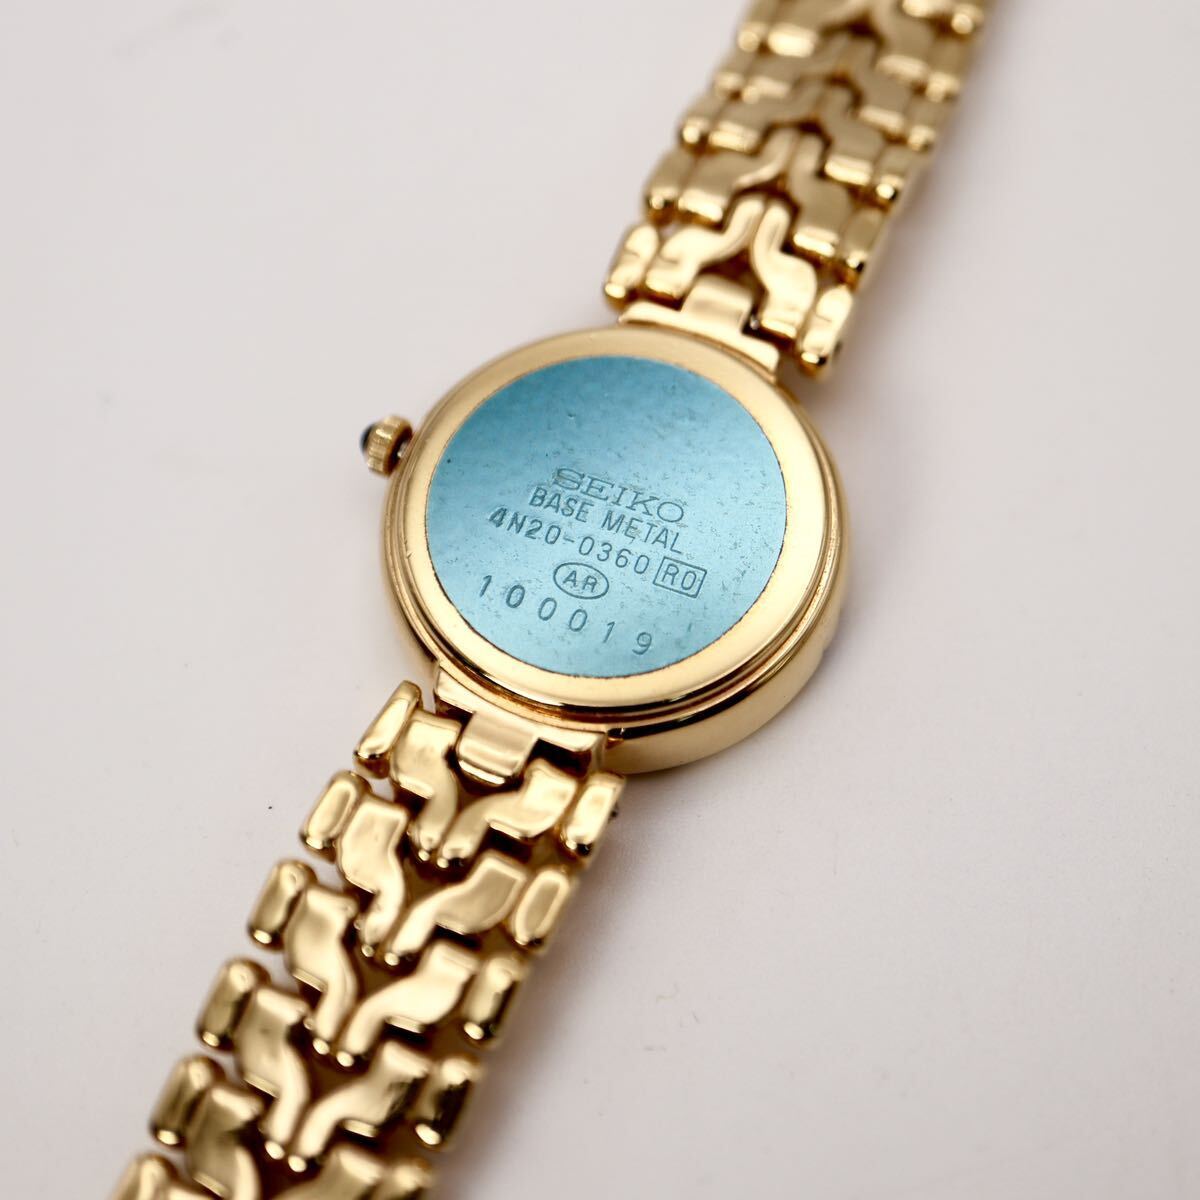  прекрасный товар!1 иен старт!SEIKO Seiko Exceline оправа 4P diamond раунд Gold наручные часы работоспособность не проверялась 41